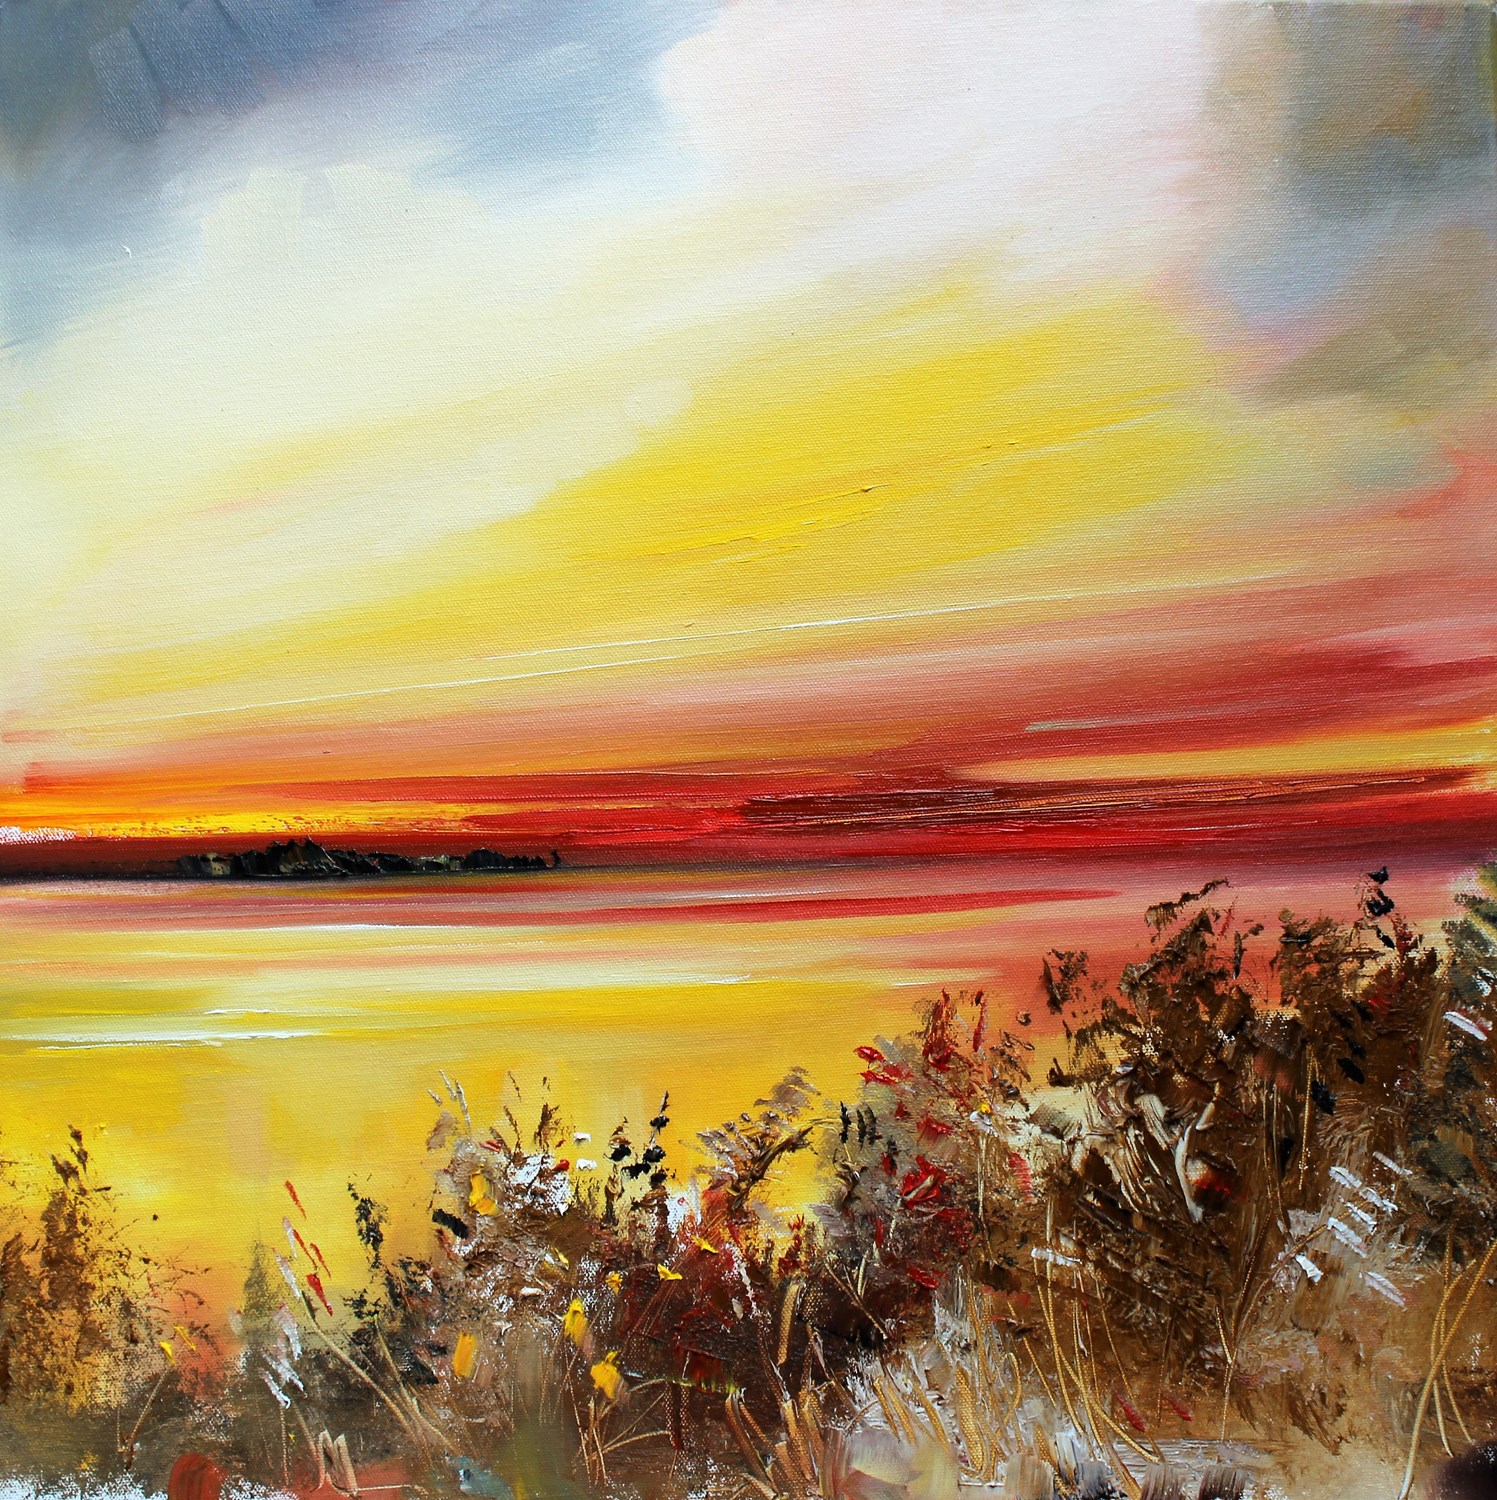 'Warm Afterglow' by artist Rosanne Barr